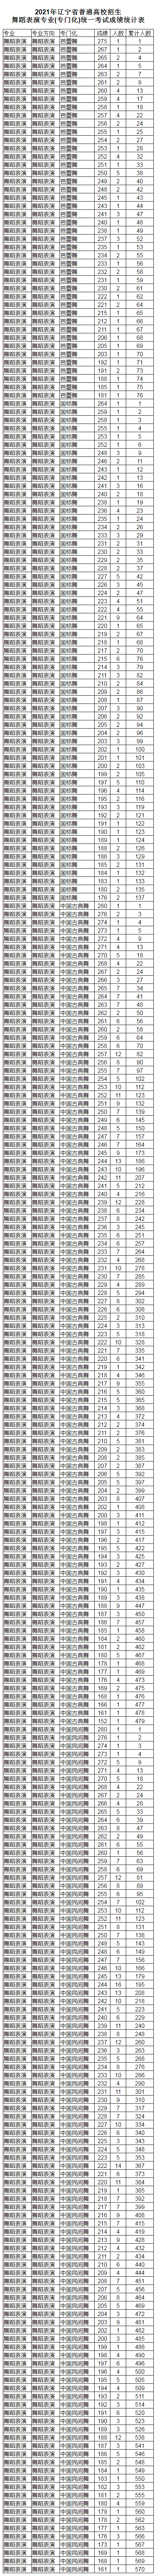 2021年辽宁省普通高校招生音乐舞蹈类专业统一考试成绩统计表